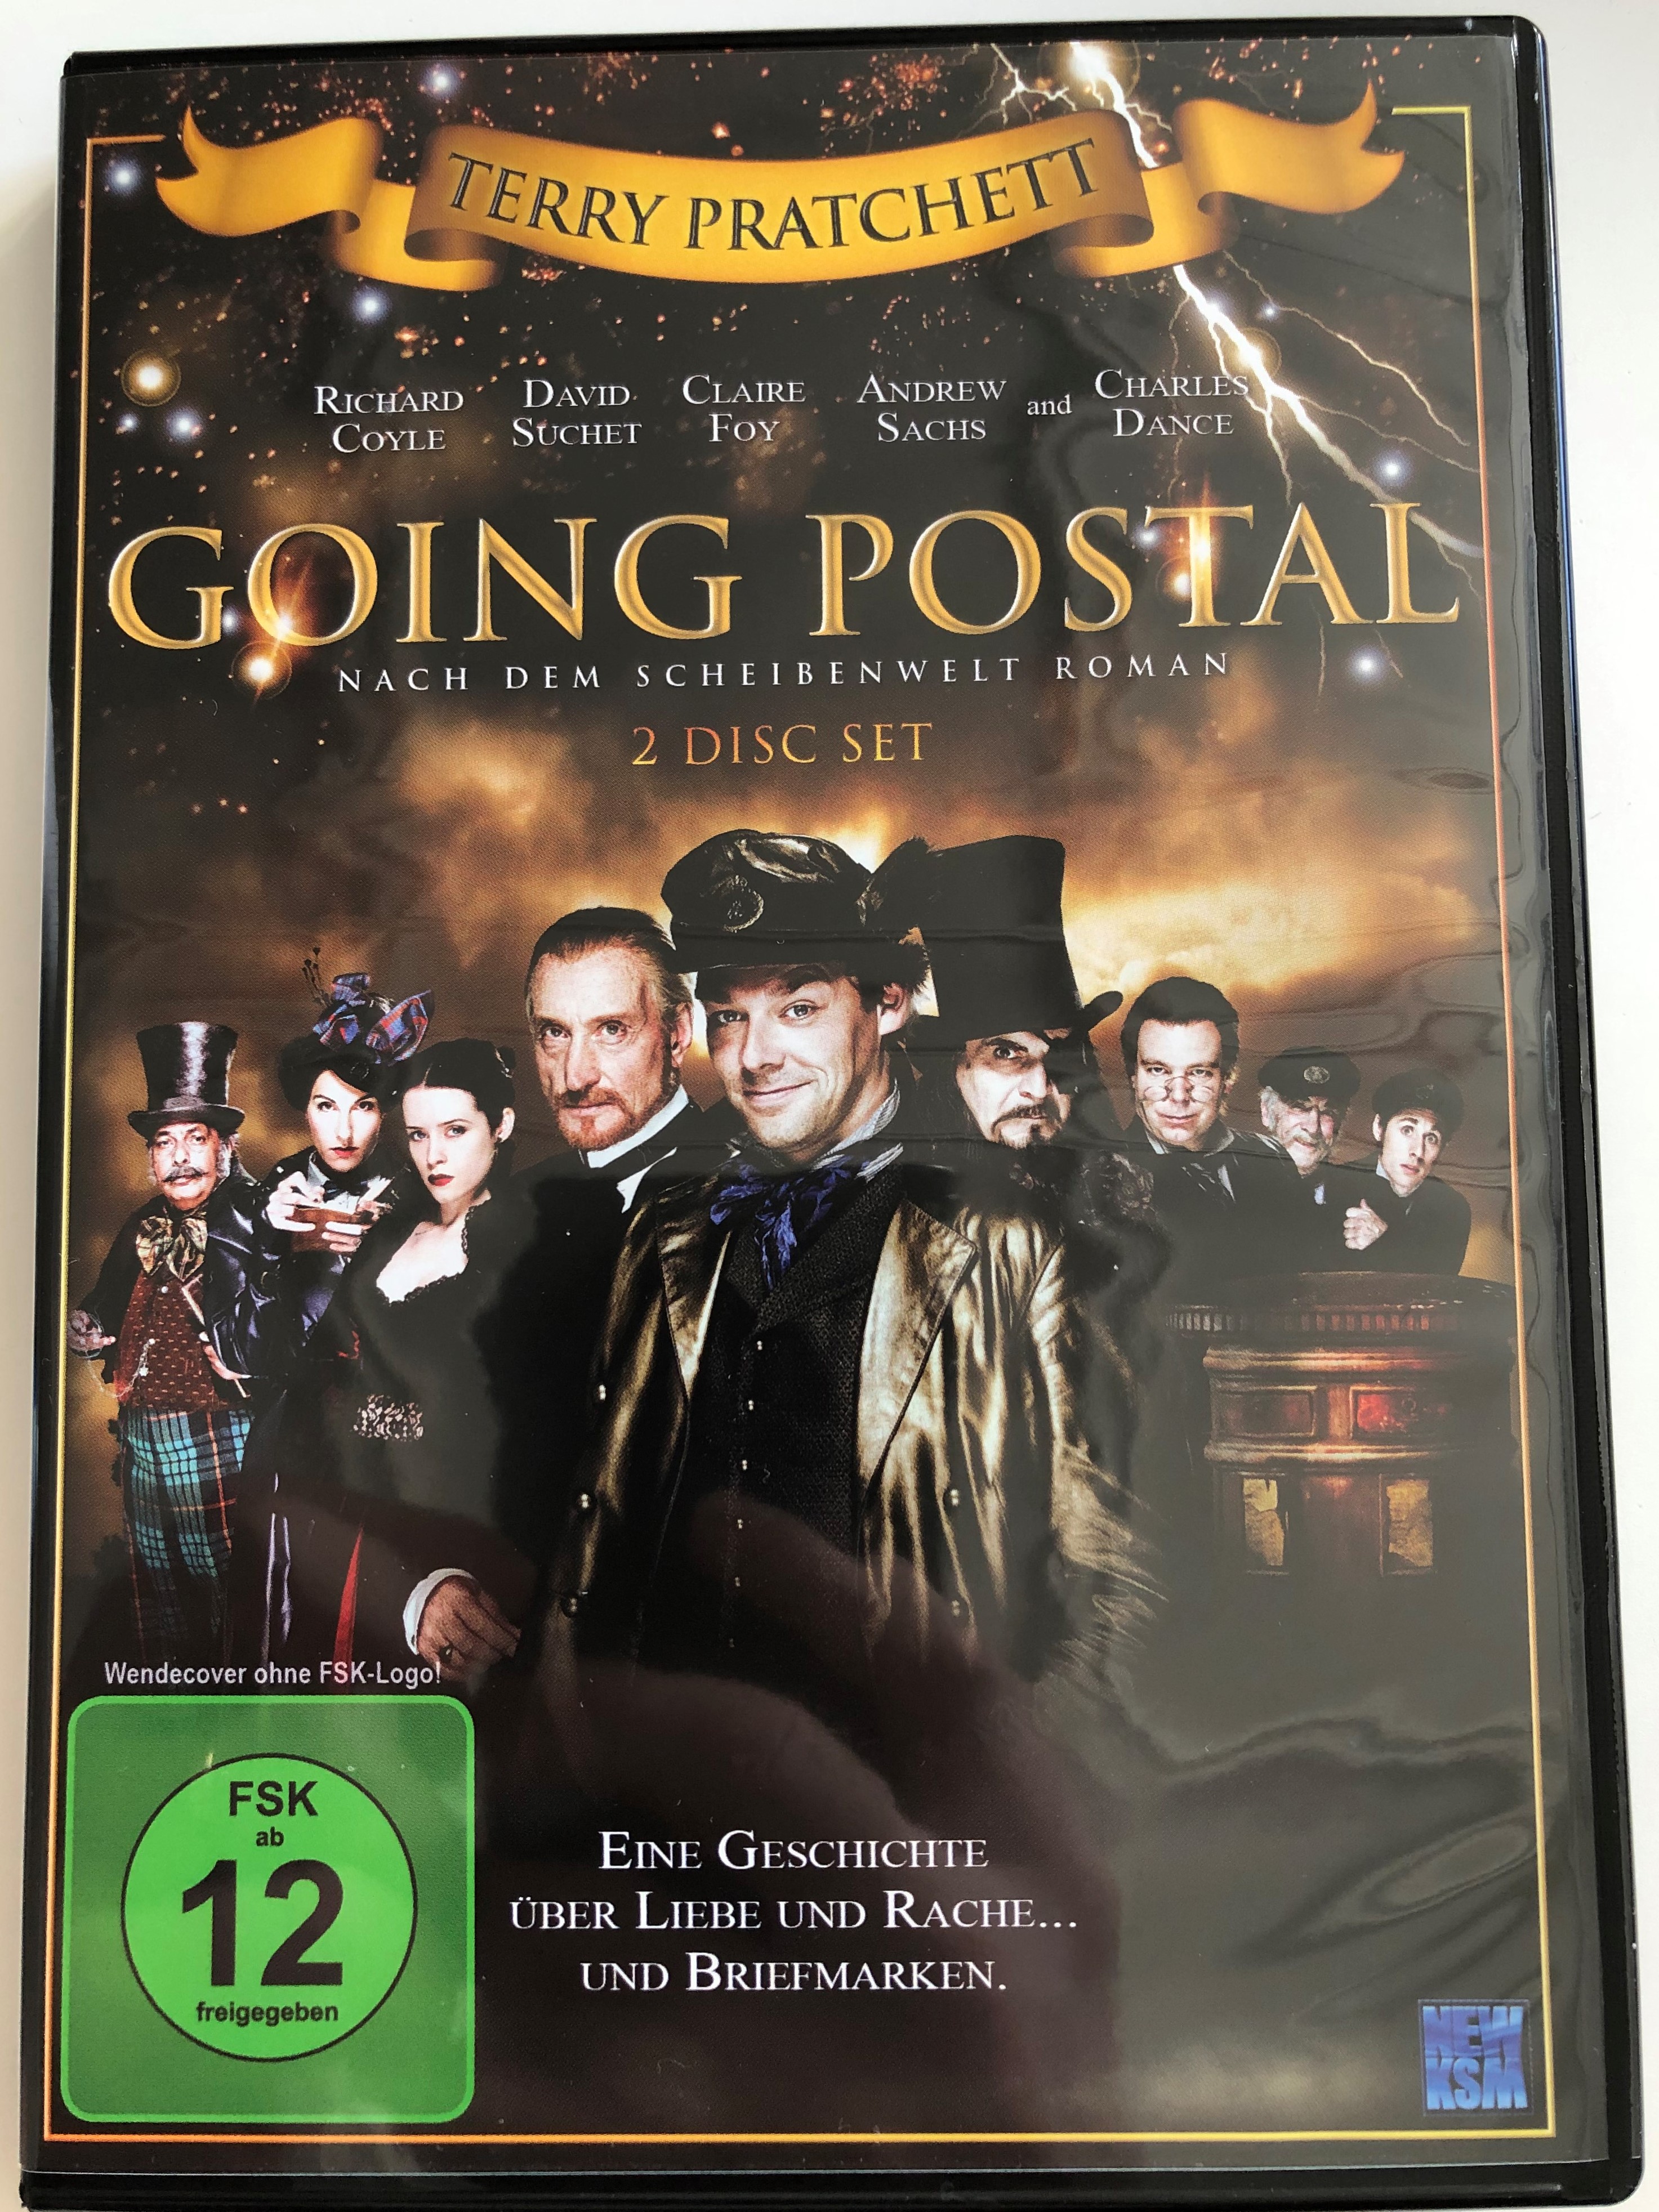 terry-pratchett-s-going-postal-dvd-2010-nach-dem-scheibenwelt-roman-2-disc-set-eine-geschichte-ber-liebe-und-rache-1-.jpg